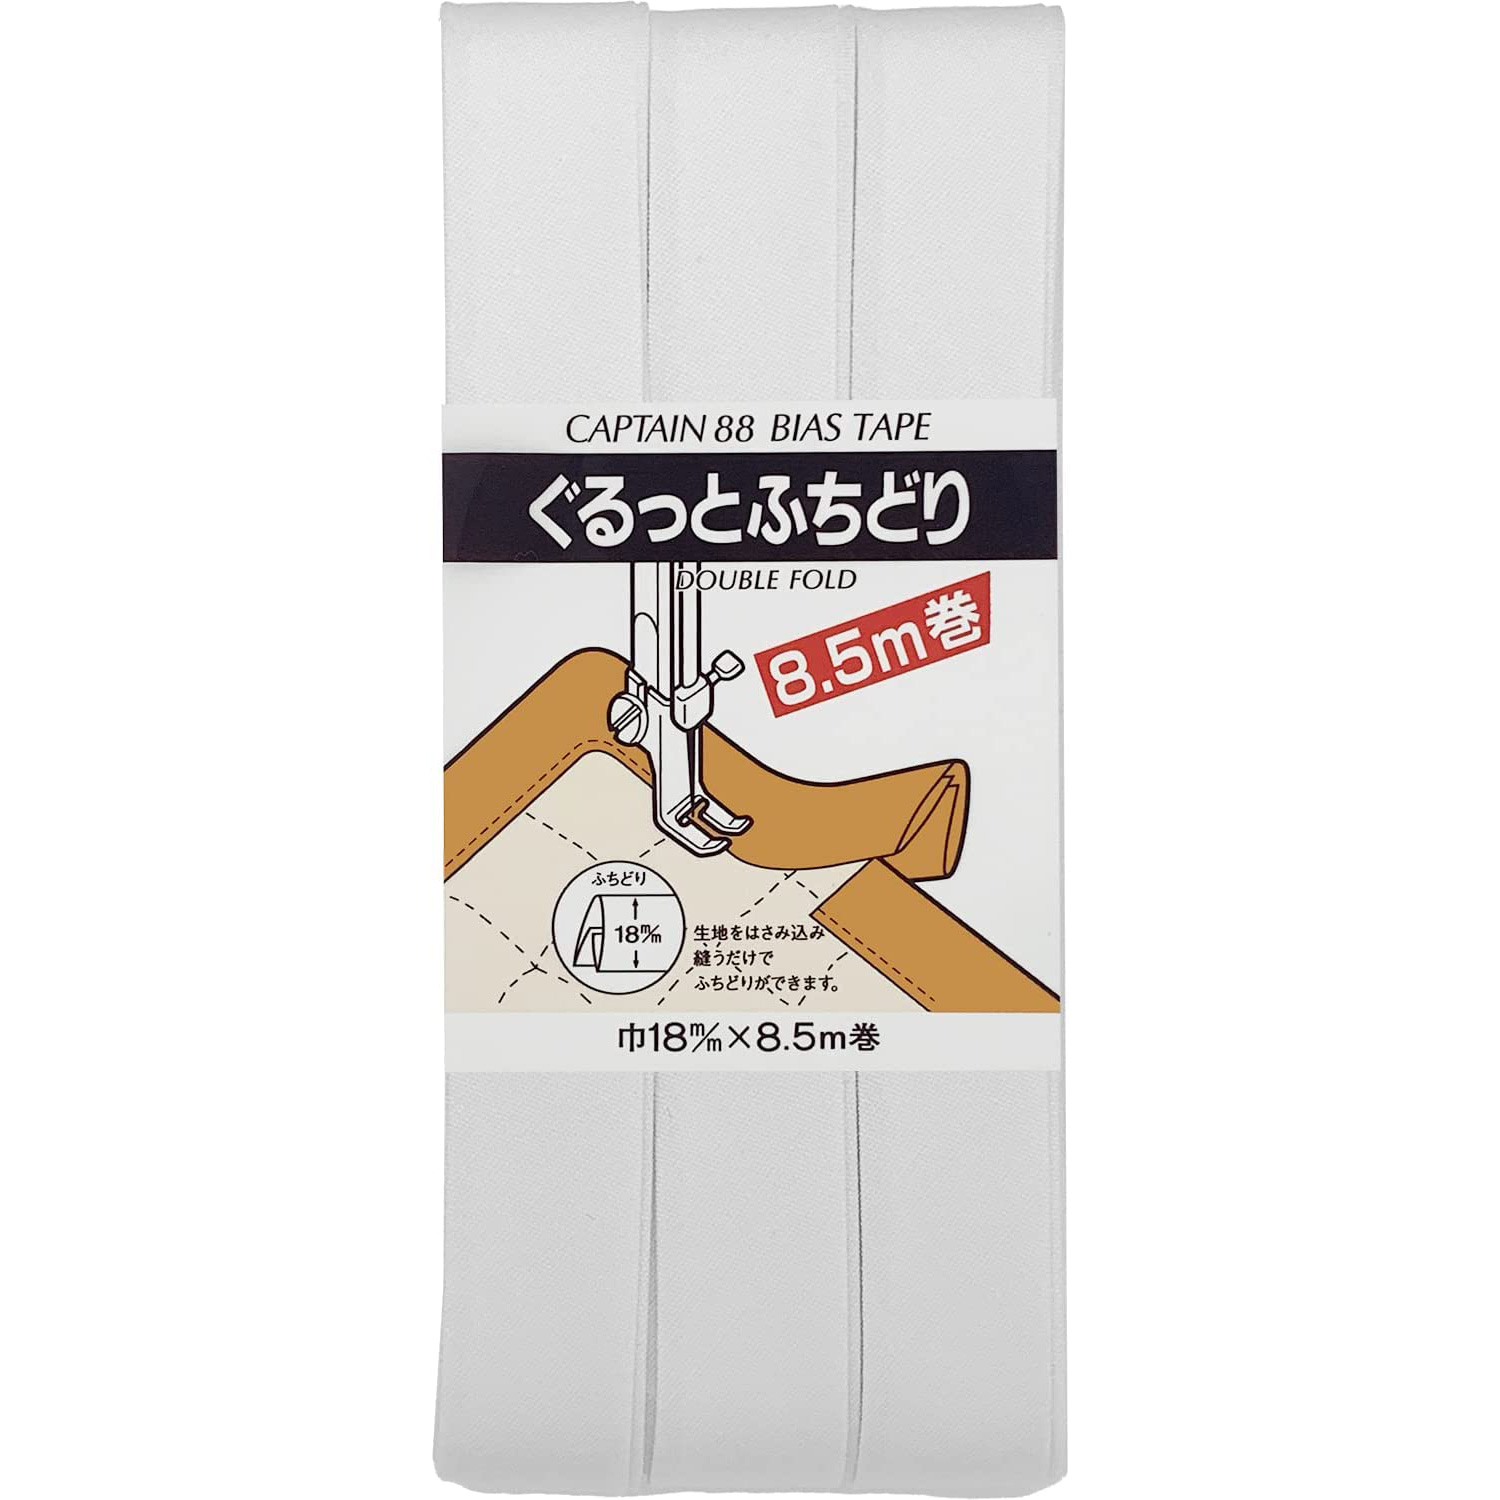 CP33-501 Hemming Bias Tape 8.5m white 1pcs (pack)